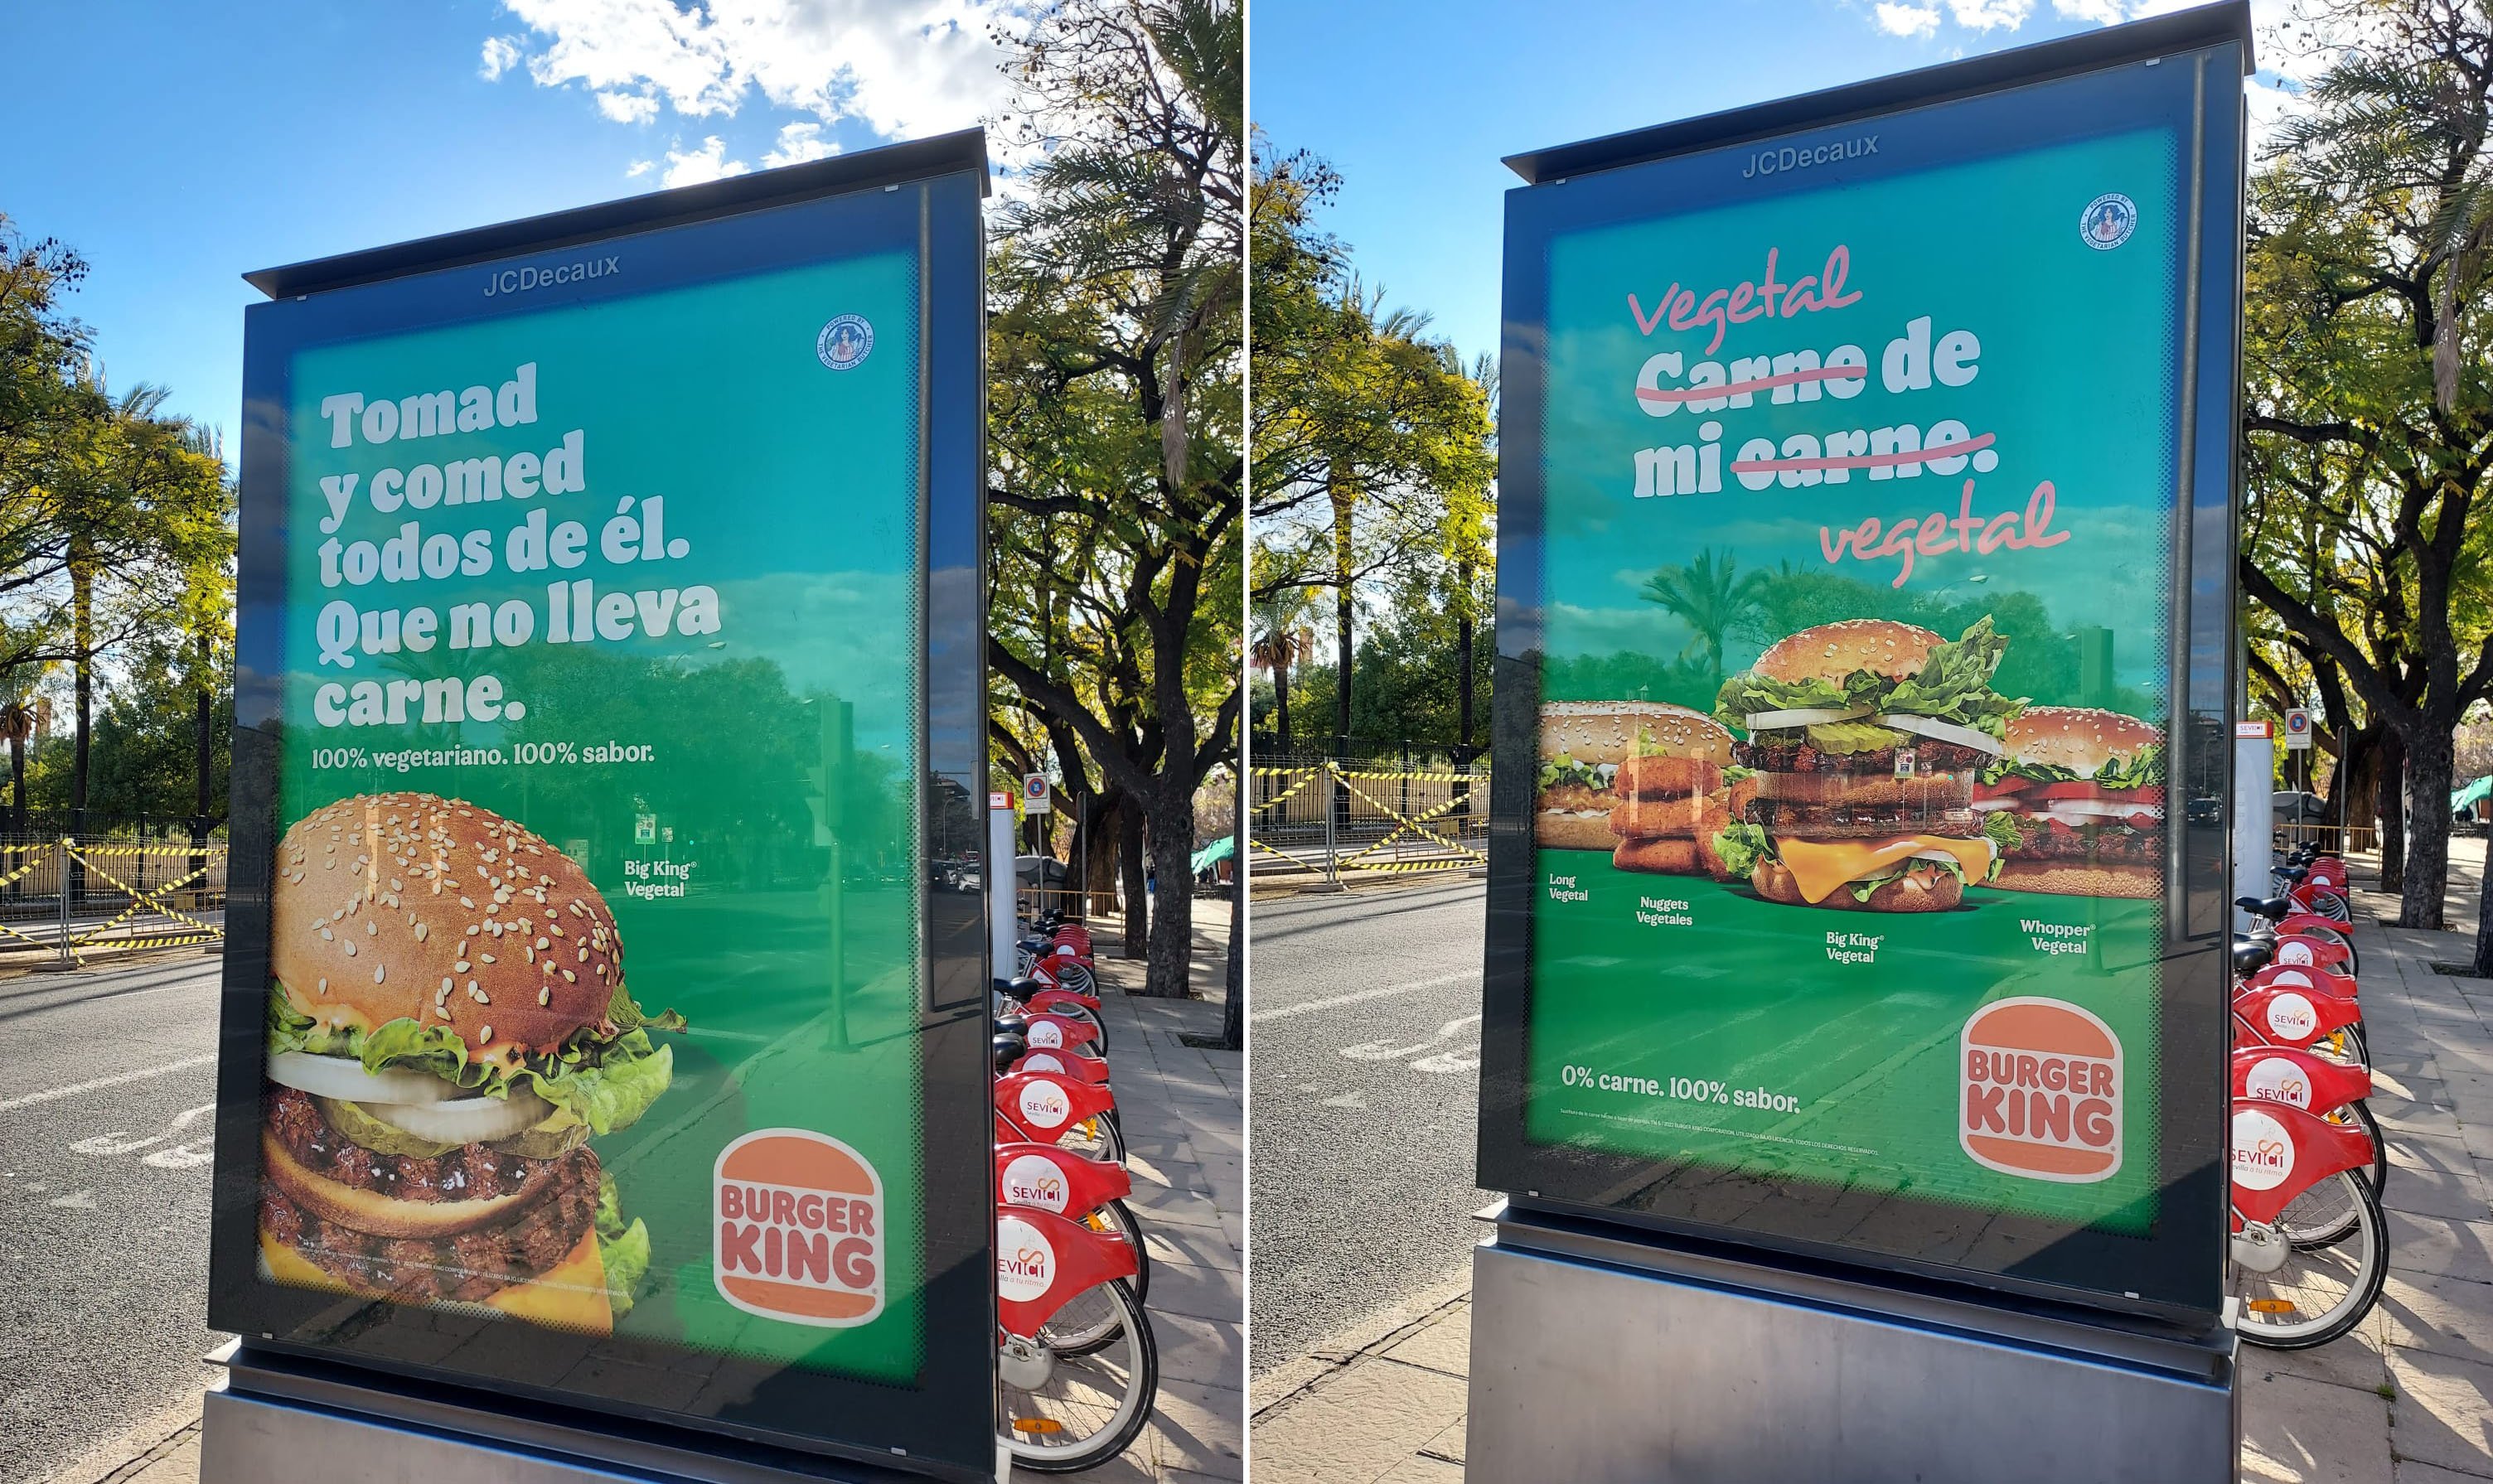 Burger King Brasil - O Anúncio Grelhado do BK voltou! Corre lá no